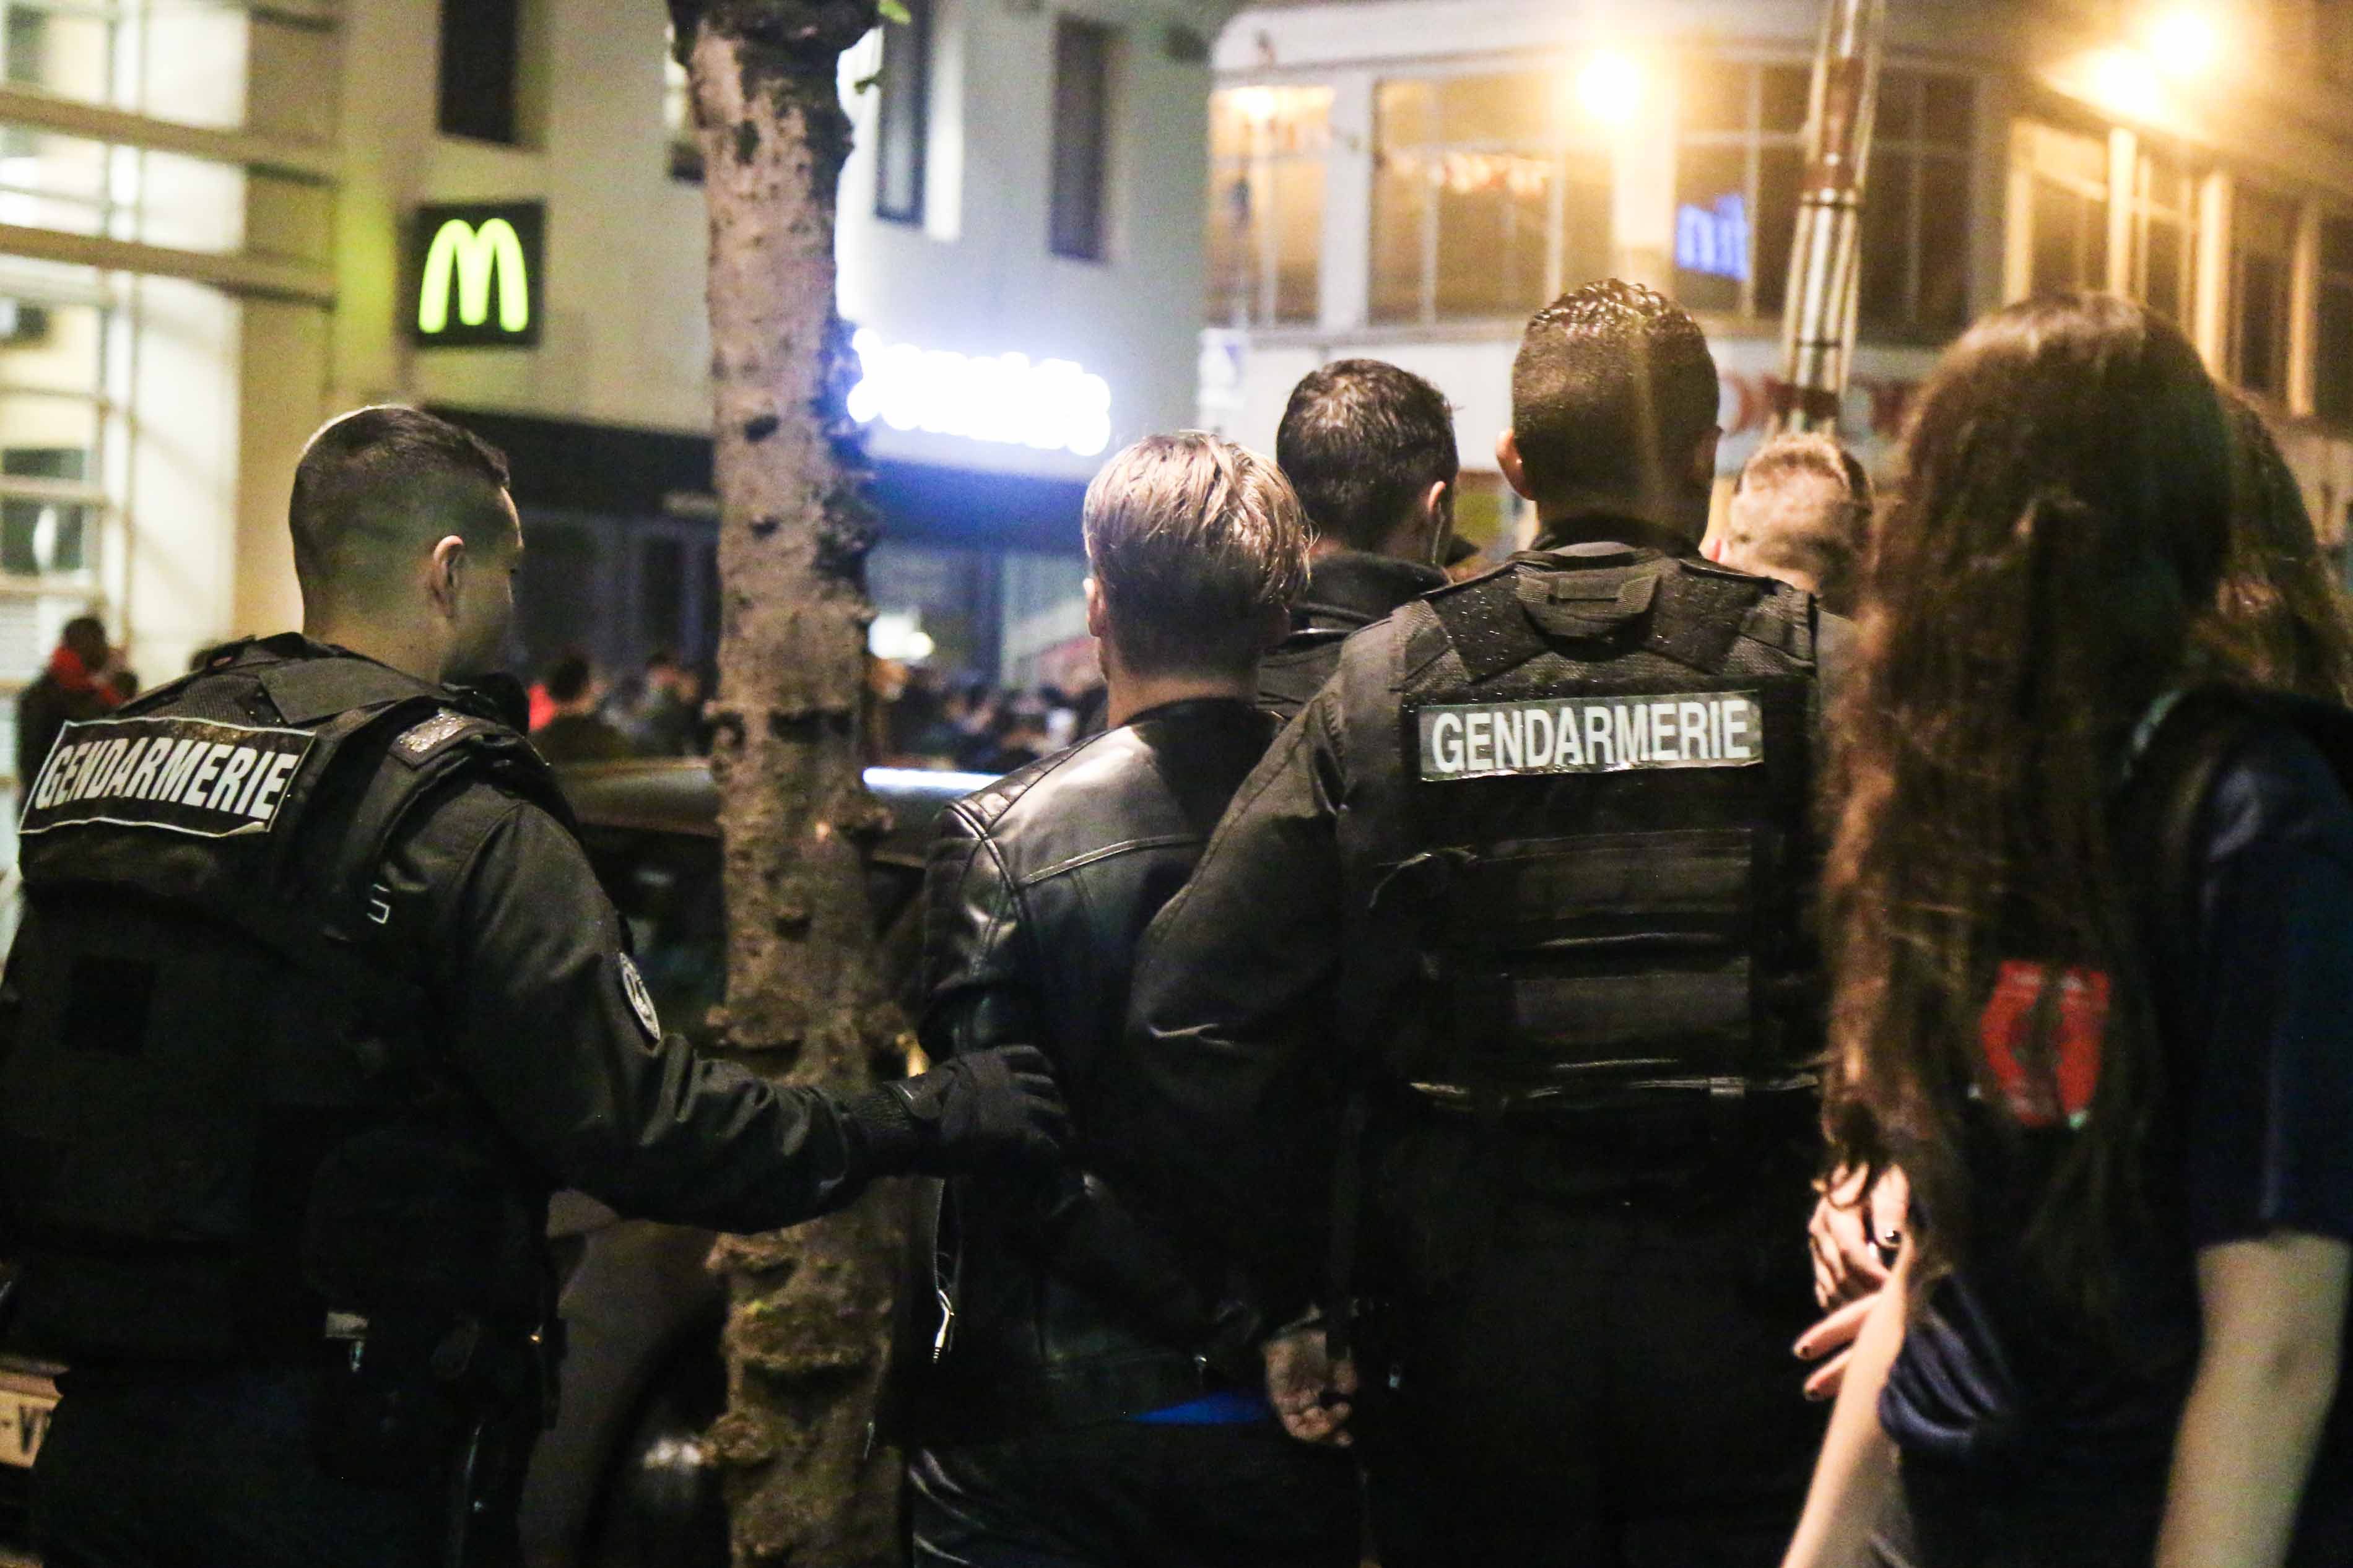 Un homme est interpellé par des gendarmes à la station de métro La Motte Piquet Grenelle le 3 juillet 2016 à Paris.